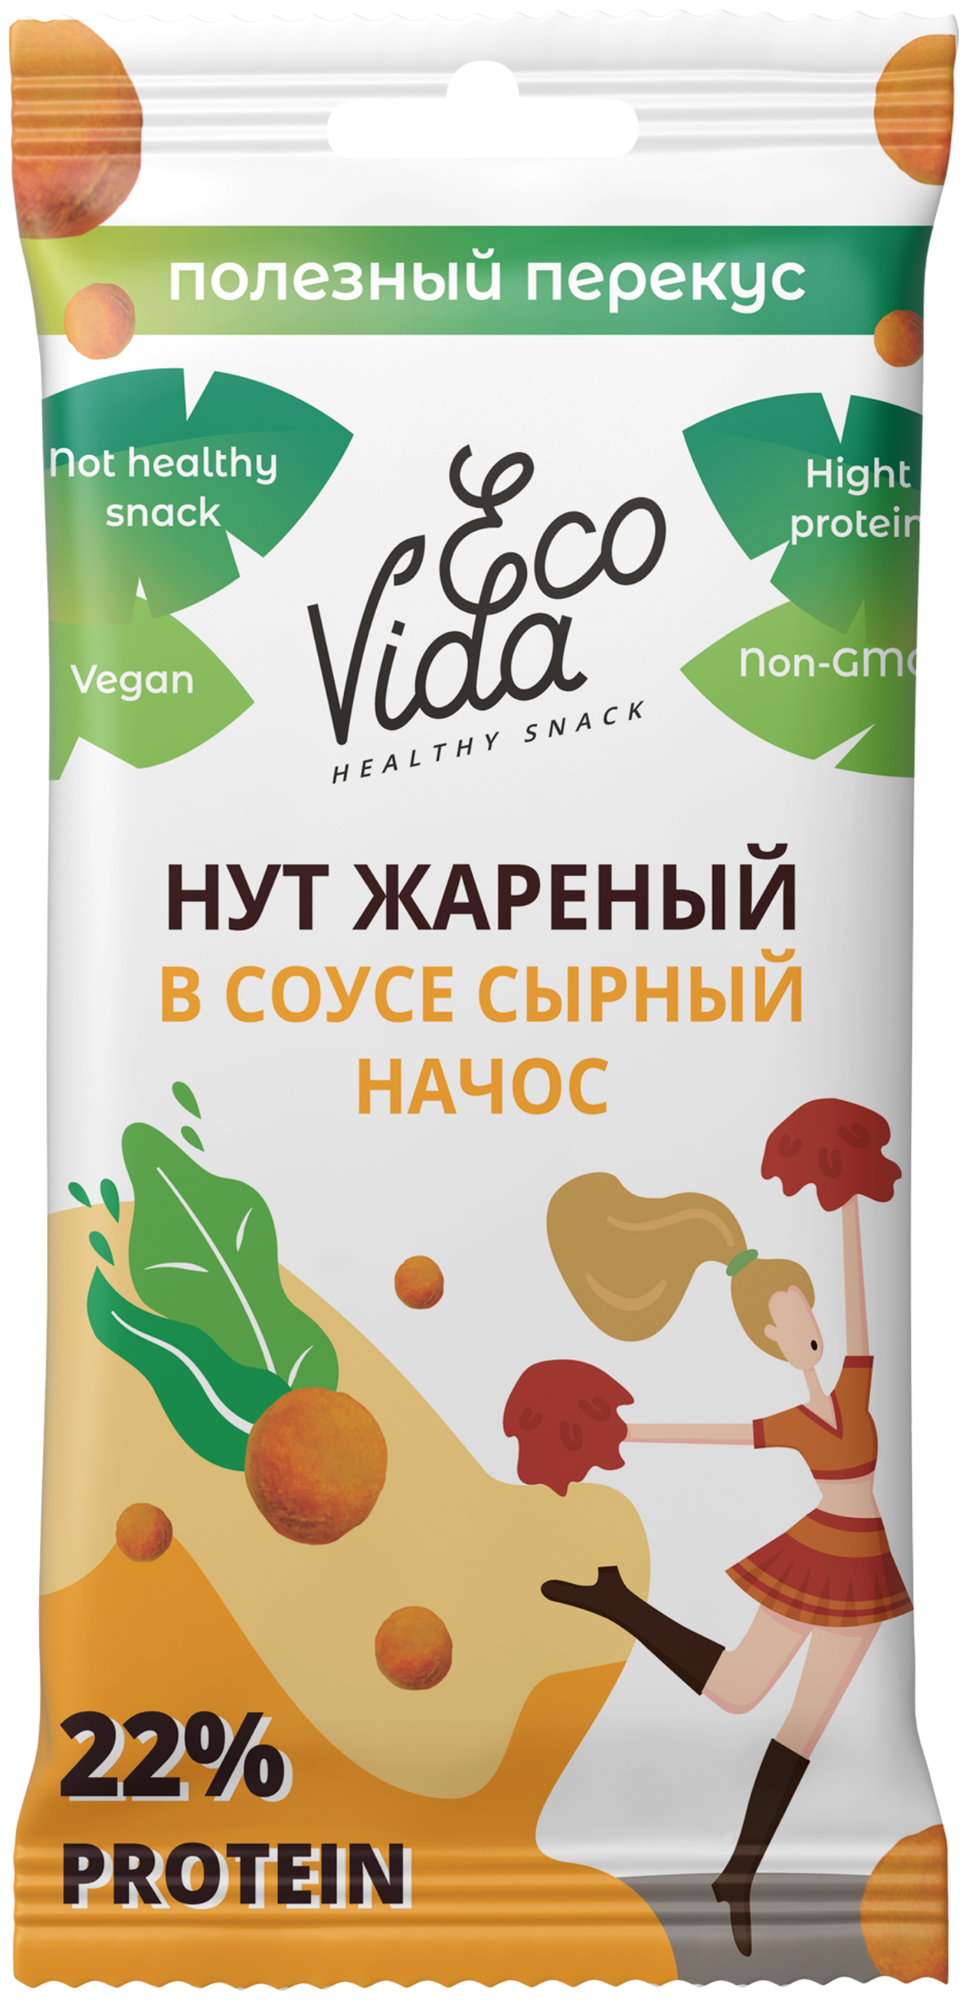 Ecovida Нут запеченный в соусе сырный начос здоровый и быстрый перекус снеки сашет 20 гр